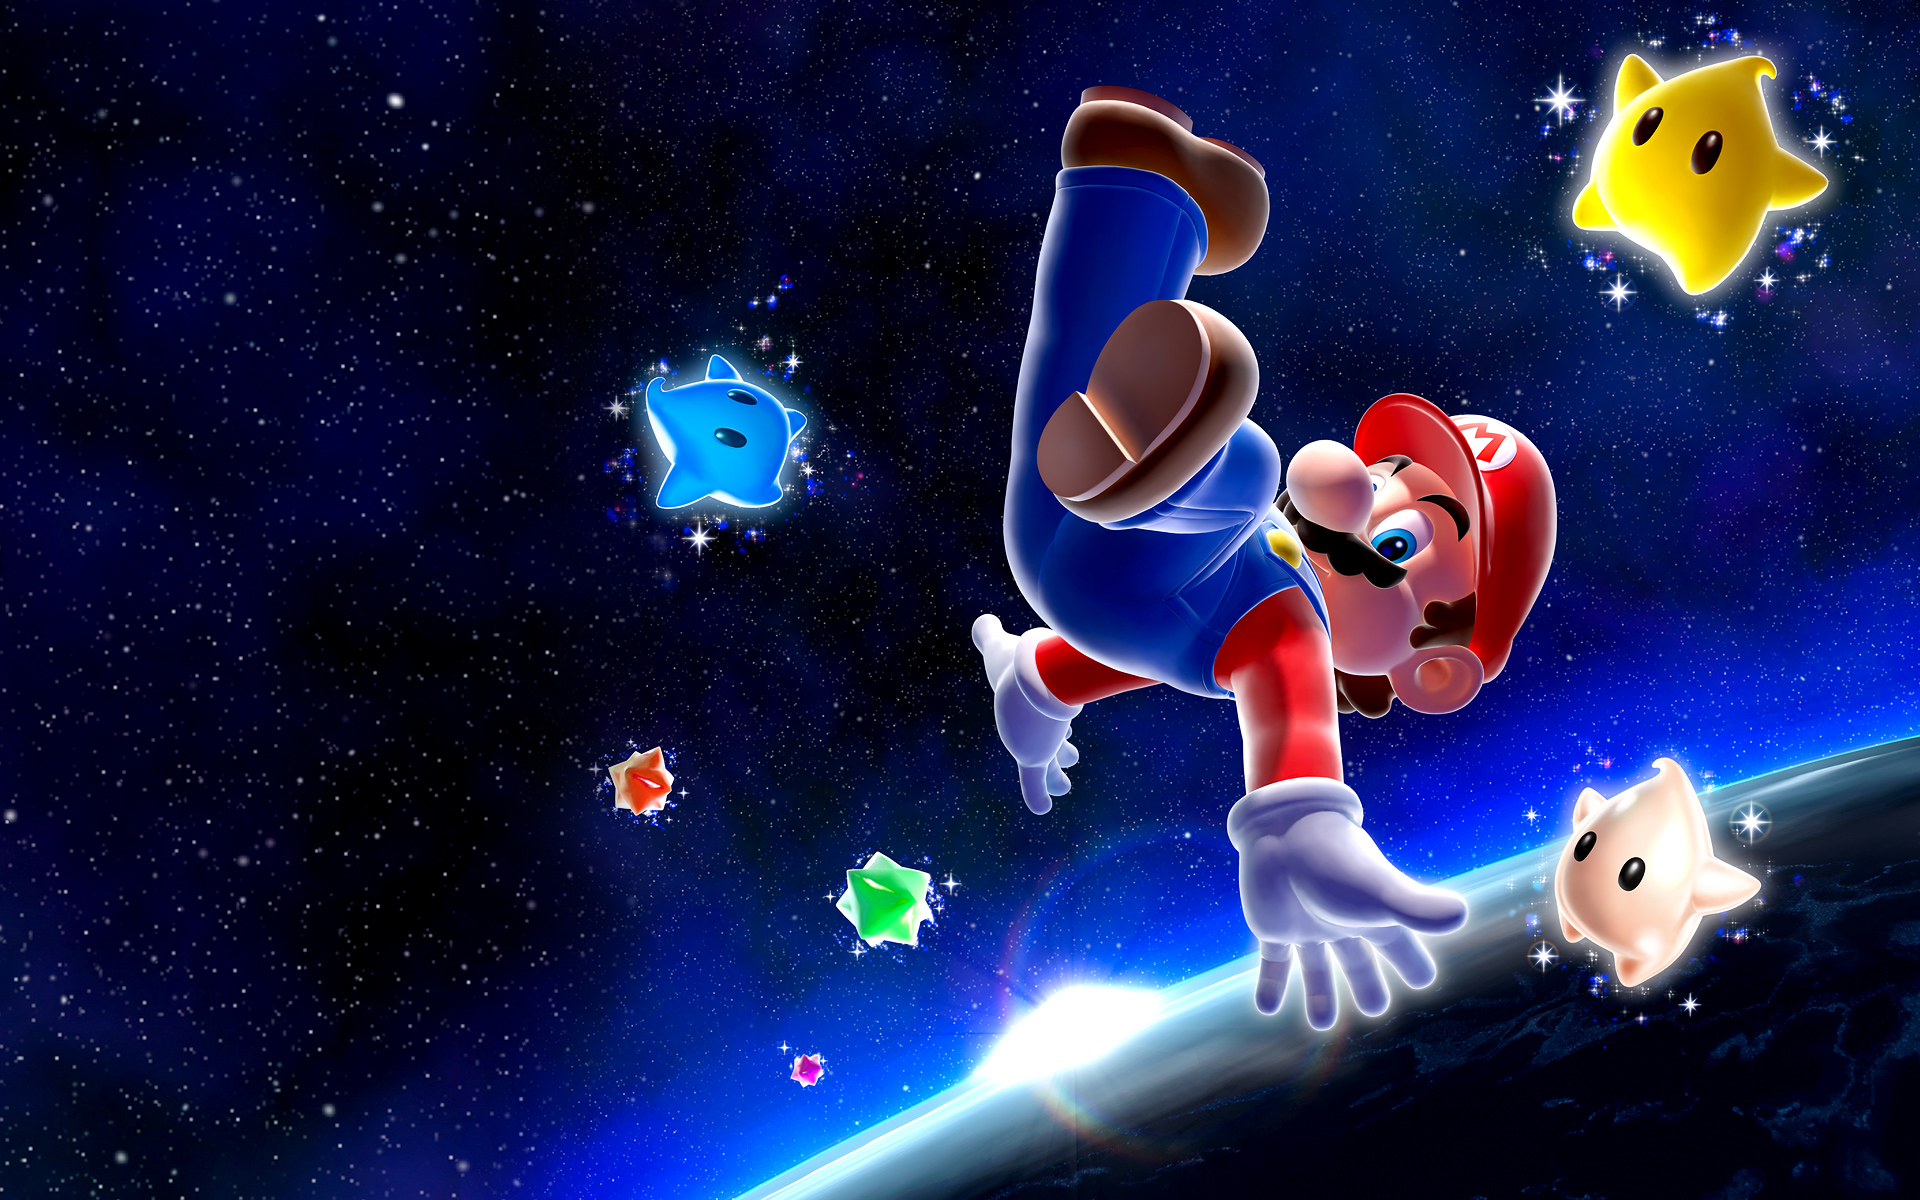 Hình nền Super Mario Galaxy sẽ khiến bạn bị mê hoặc với độ phân giải cao. Tận dụng sự đẹp rực rỡ đó để tạo nên các bức ảnh độc đáo và đẹp mắt hơn bao giờ hết.